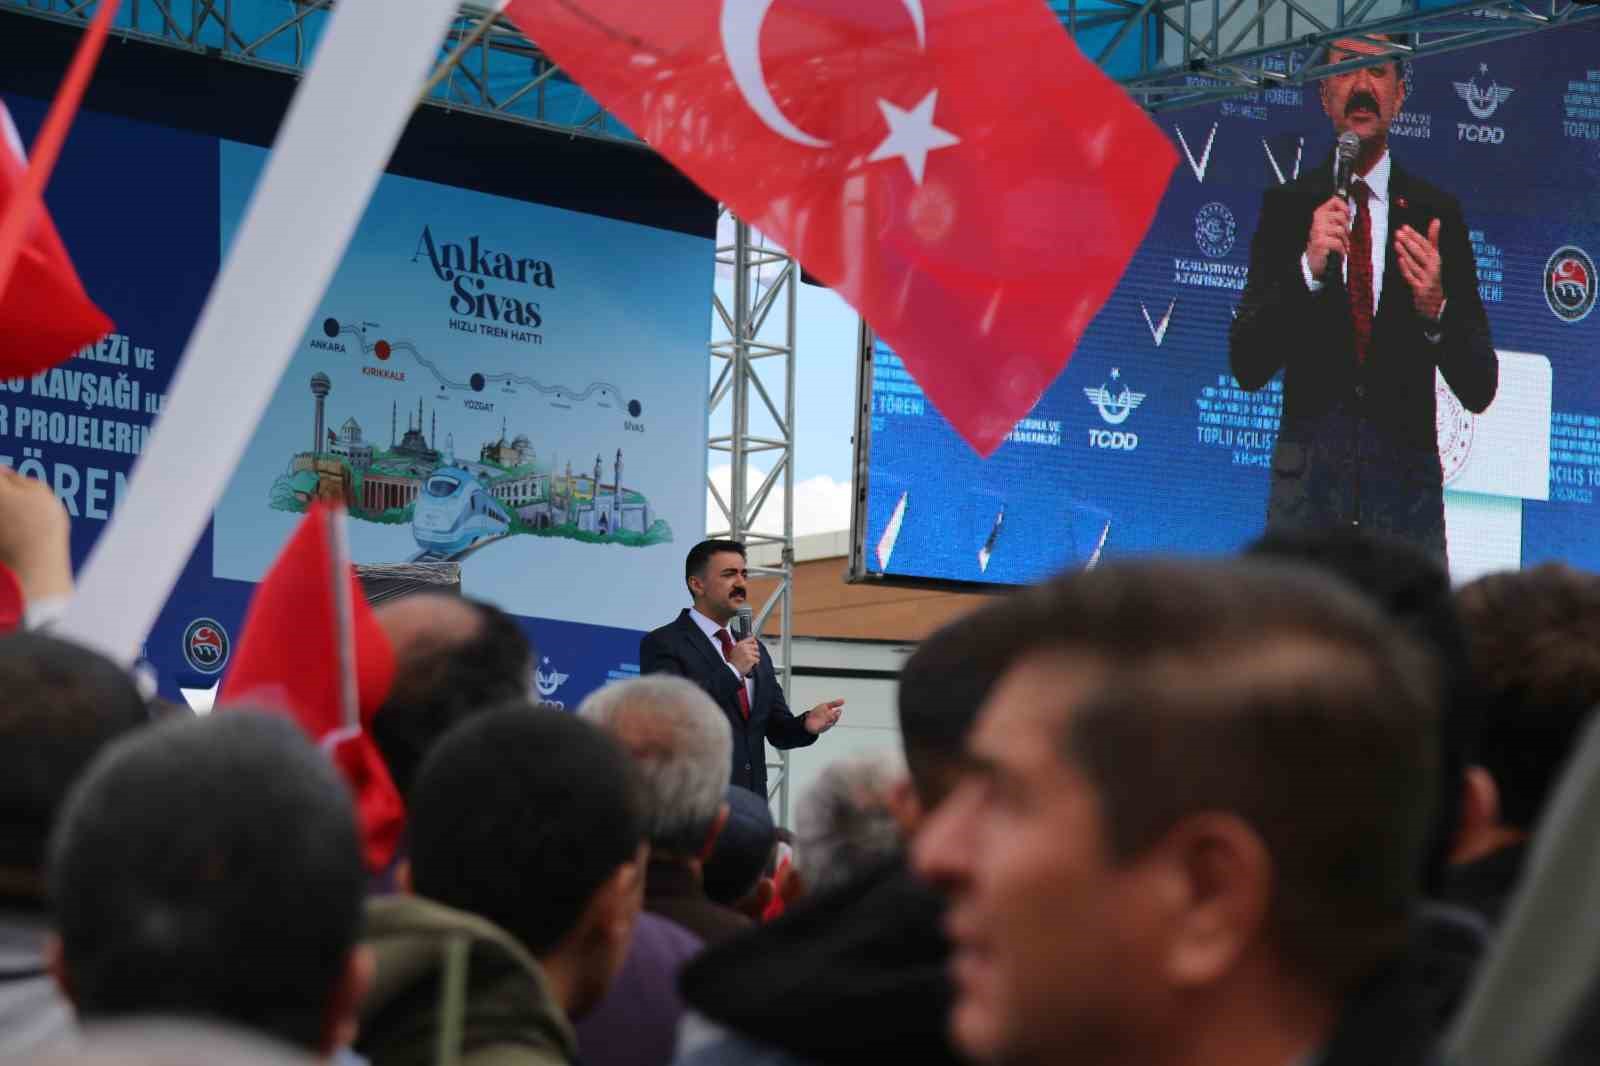 43 ilin geçiş güzergahı hızlı trenle buluştu, ilk sefer yapıldı: Binlerce vatandaş Türk bayraklarıyla karşıladı